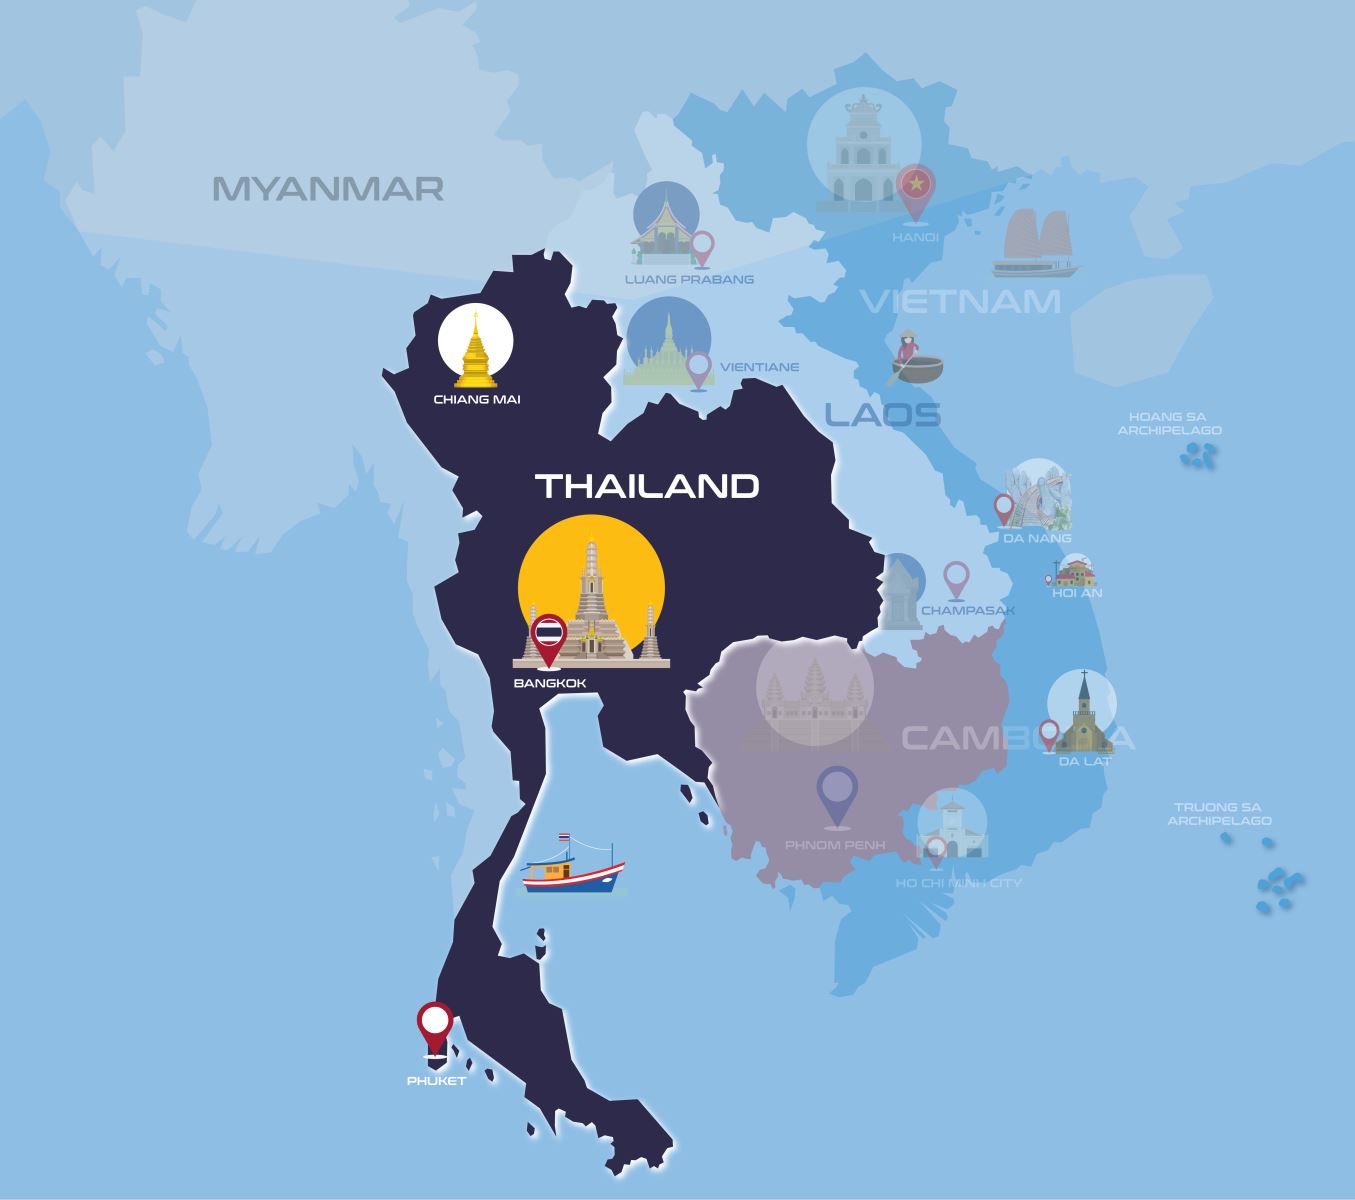 Inbound Vietnam - Thailand